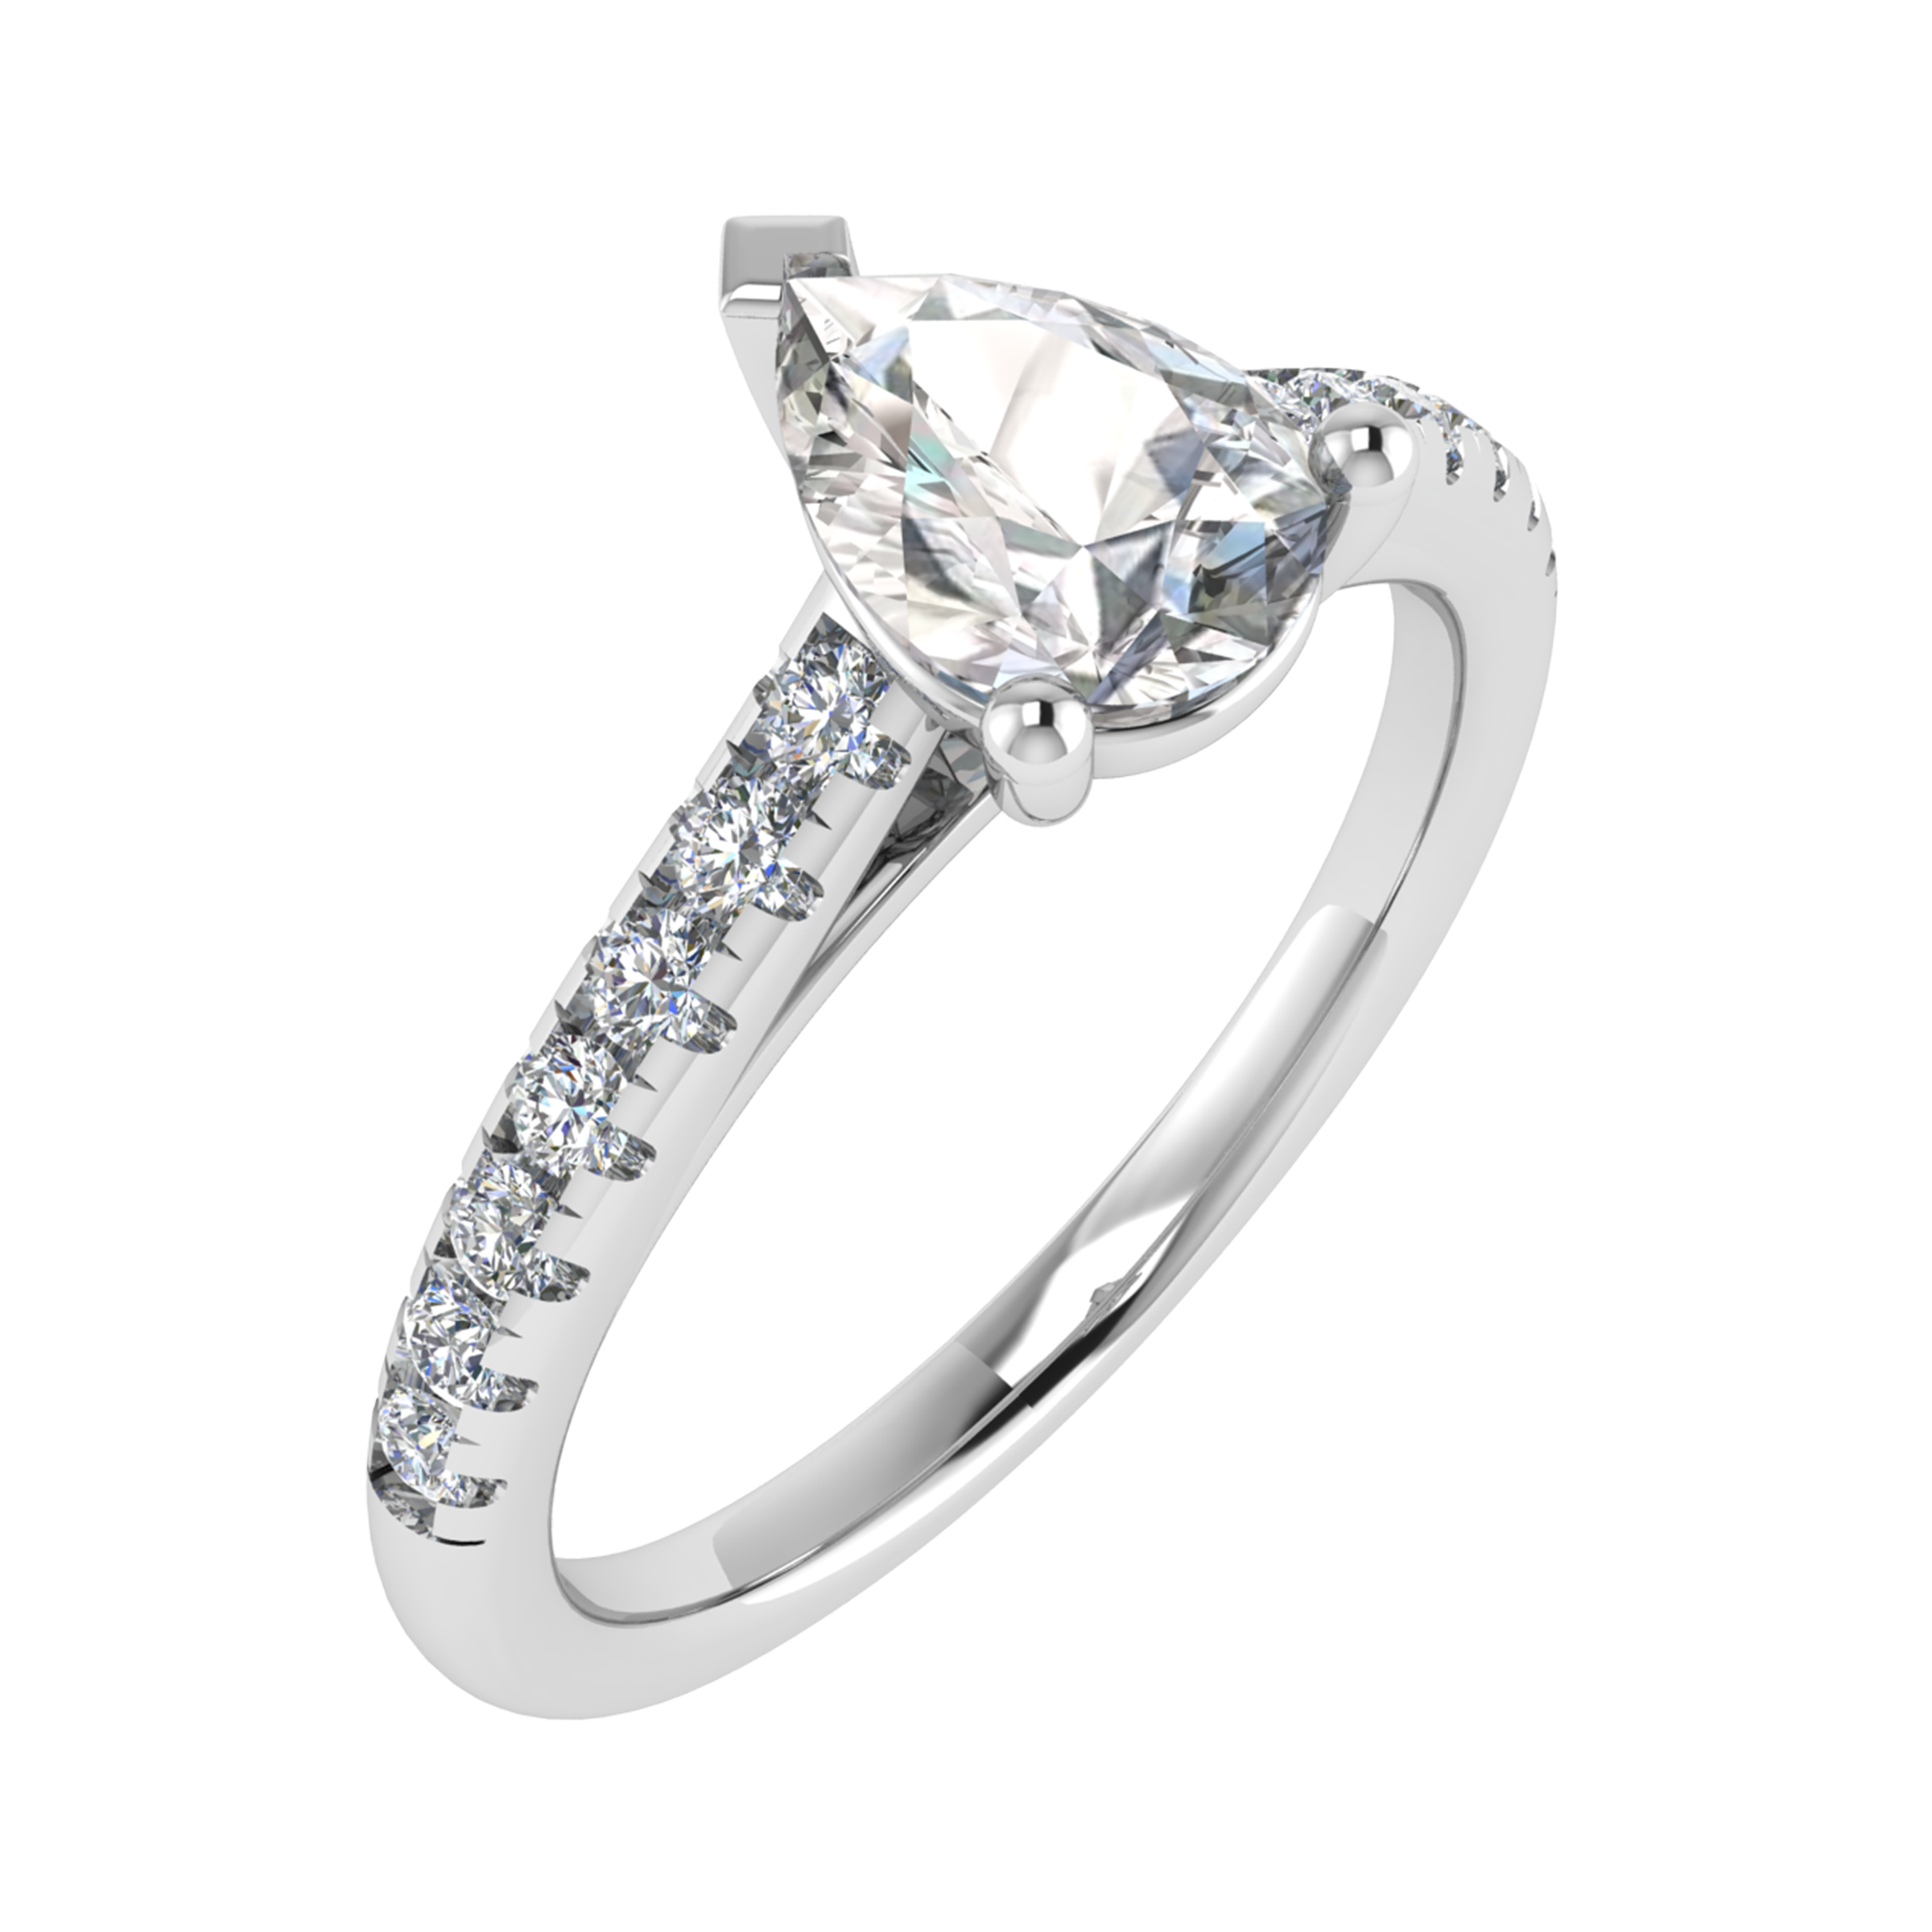 ADRX 6237 | Engagement Ring | Adori Millennium